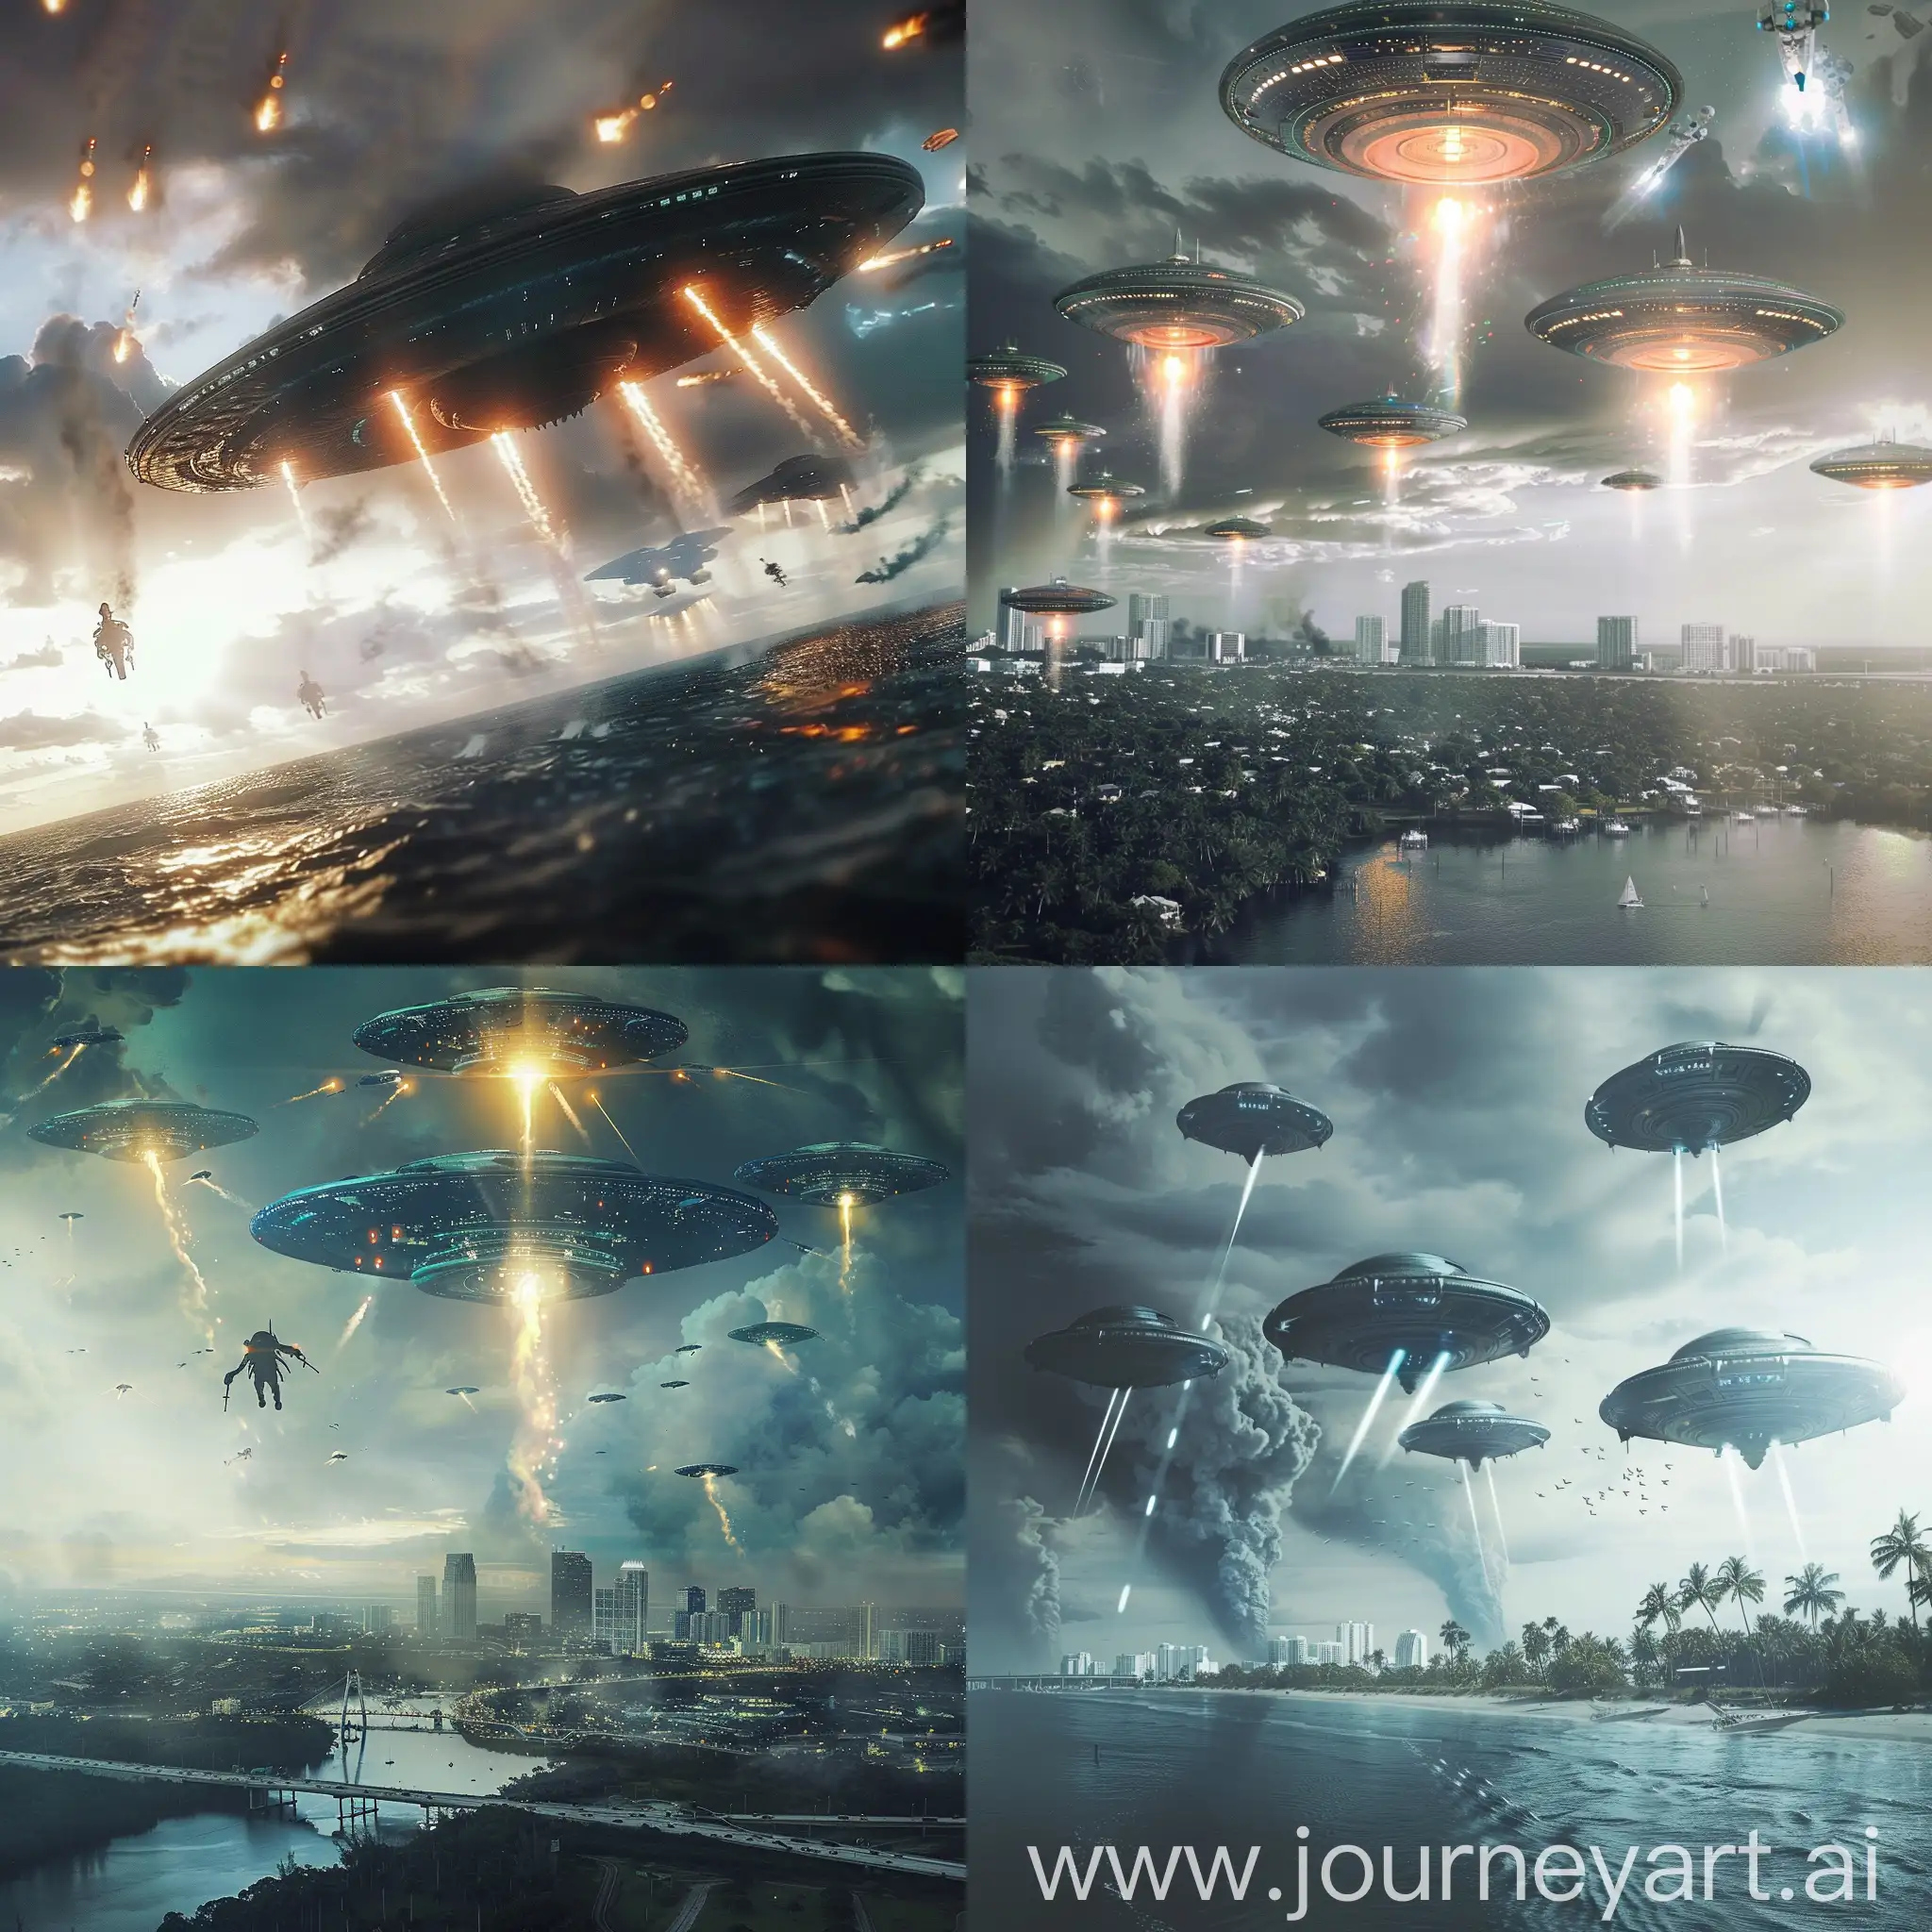 Intergalactic-Showdown-Florida-Man-Versus-Alien-Fleet